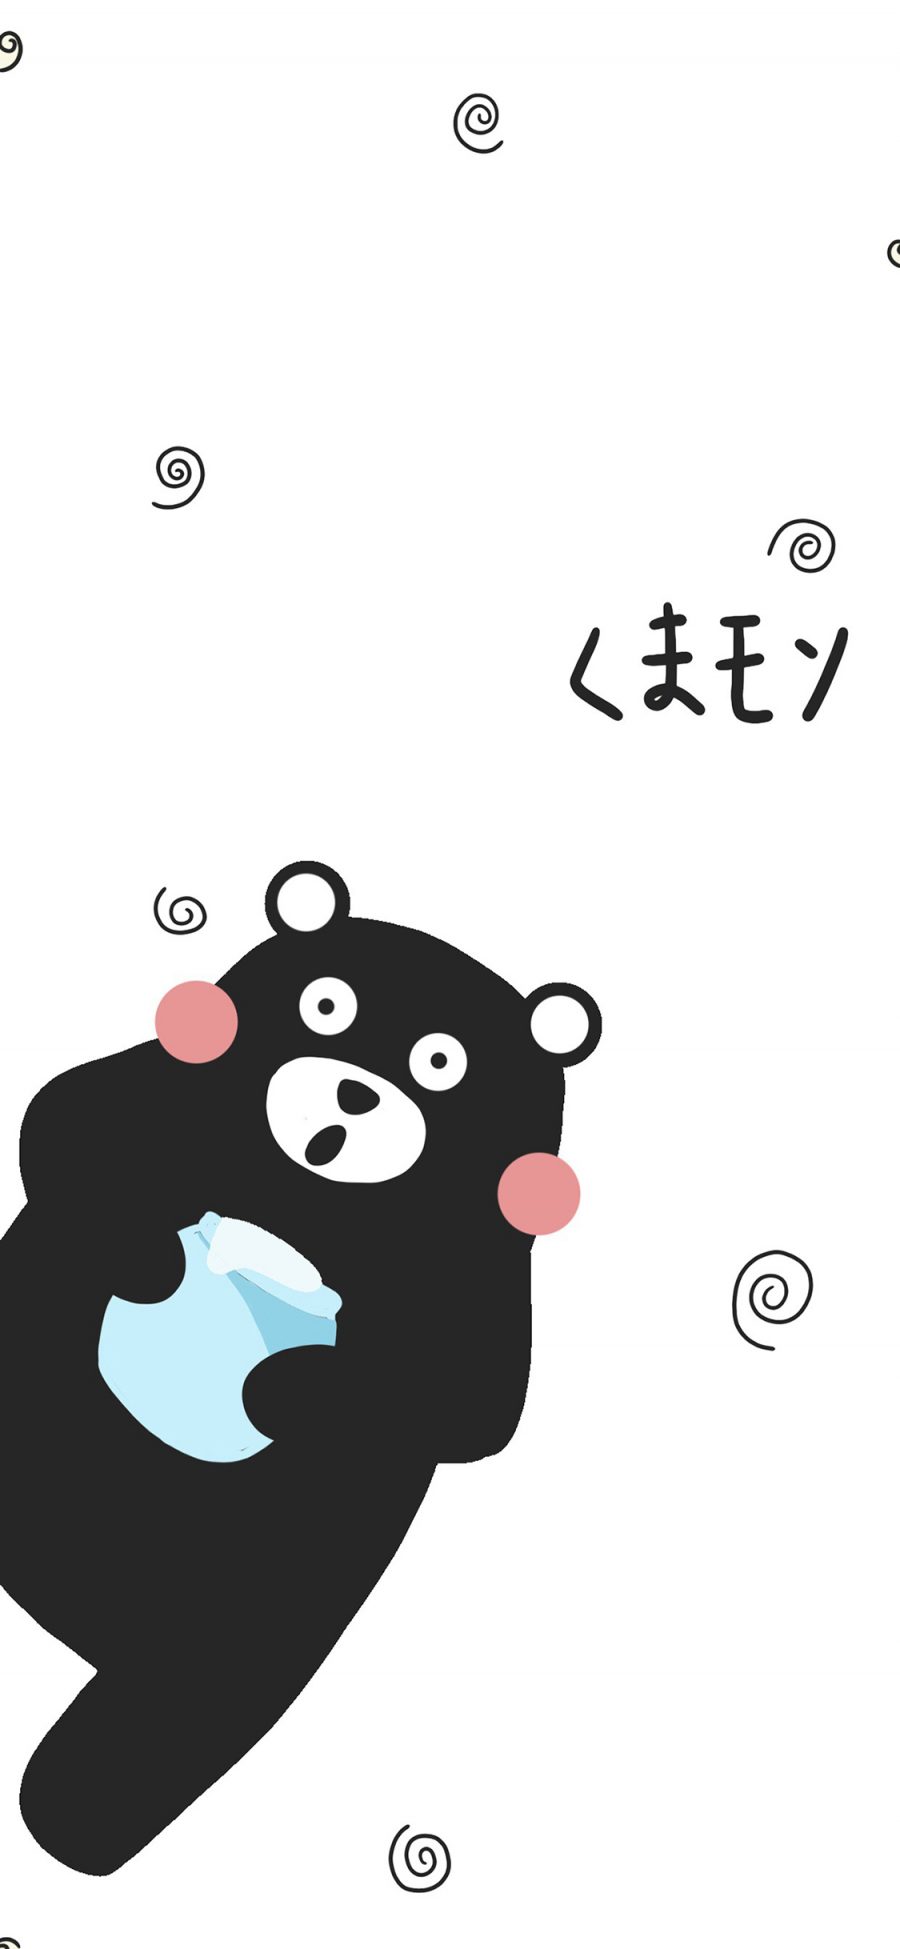 [2436×1125]熊本熊 黑白 绘画 卡通 苹果手机动漫壁纸图片